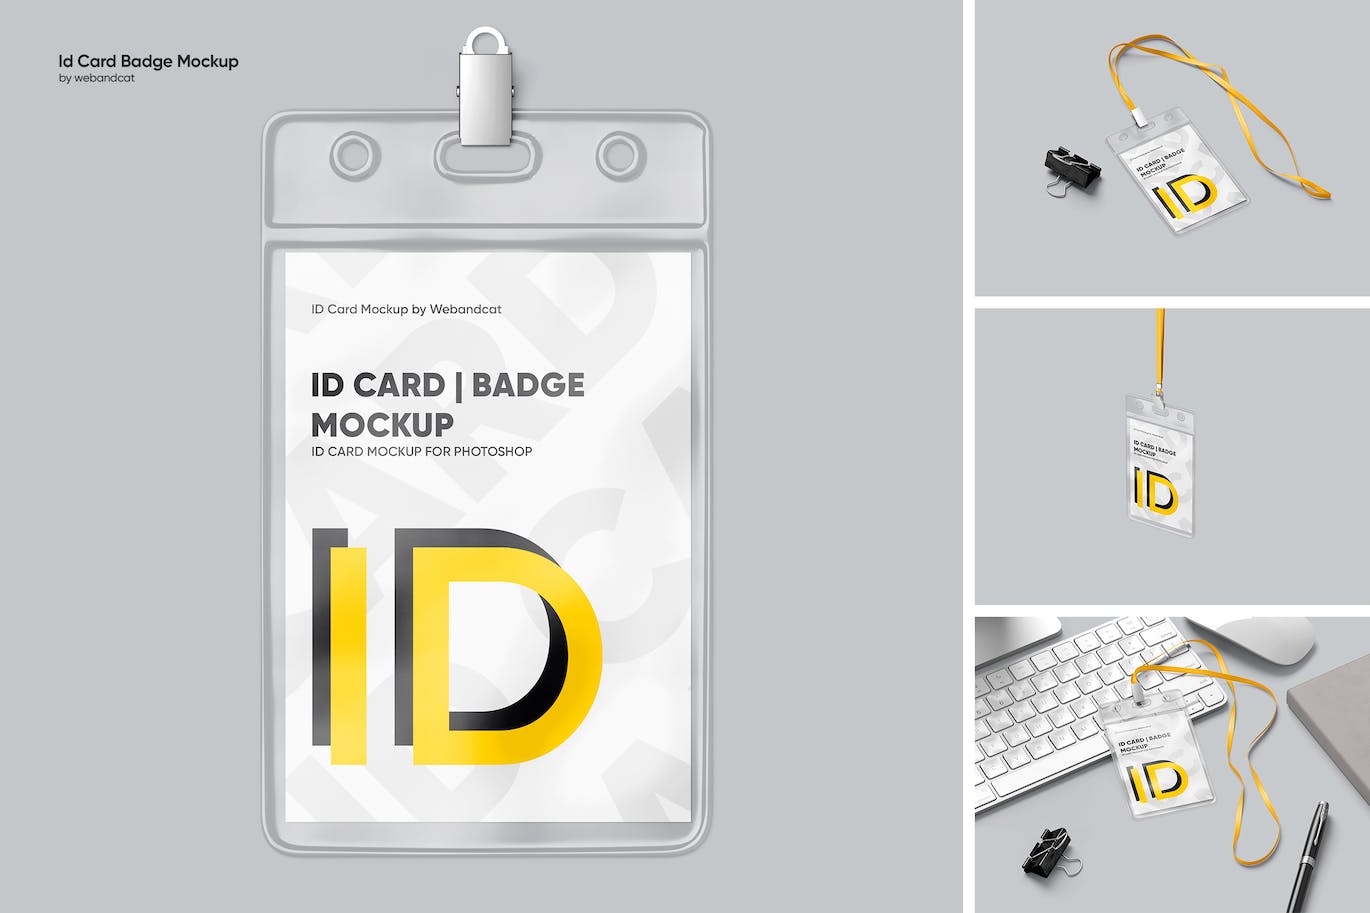 工作牌/厂牌设计样机 ID Card Mockup 样机素材 第1张